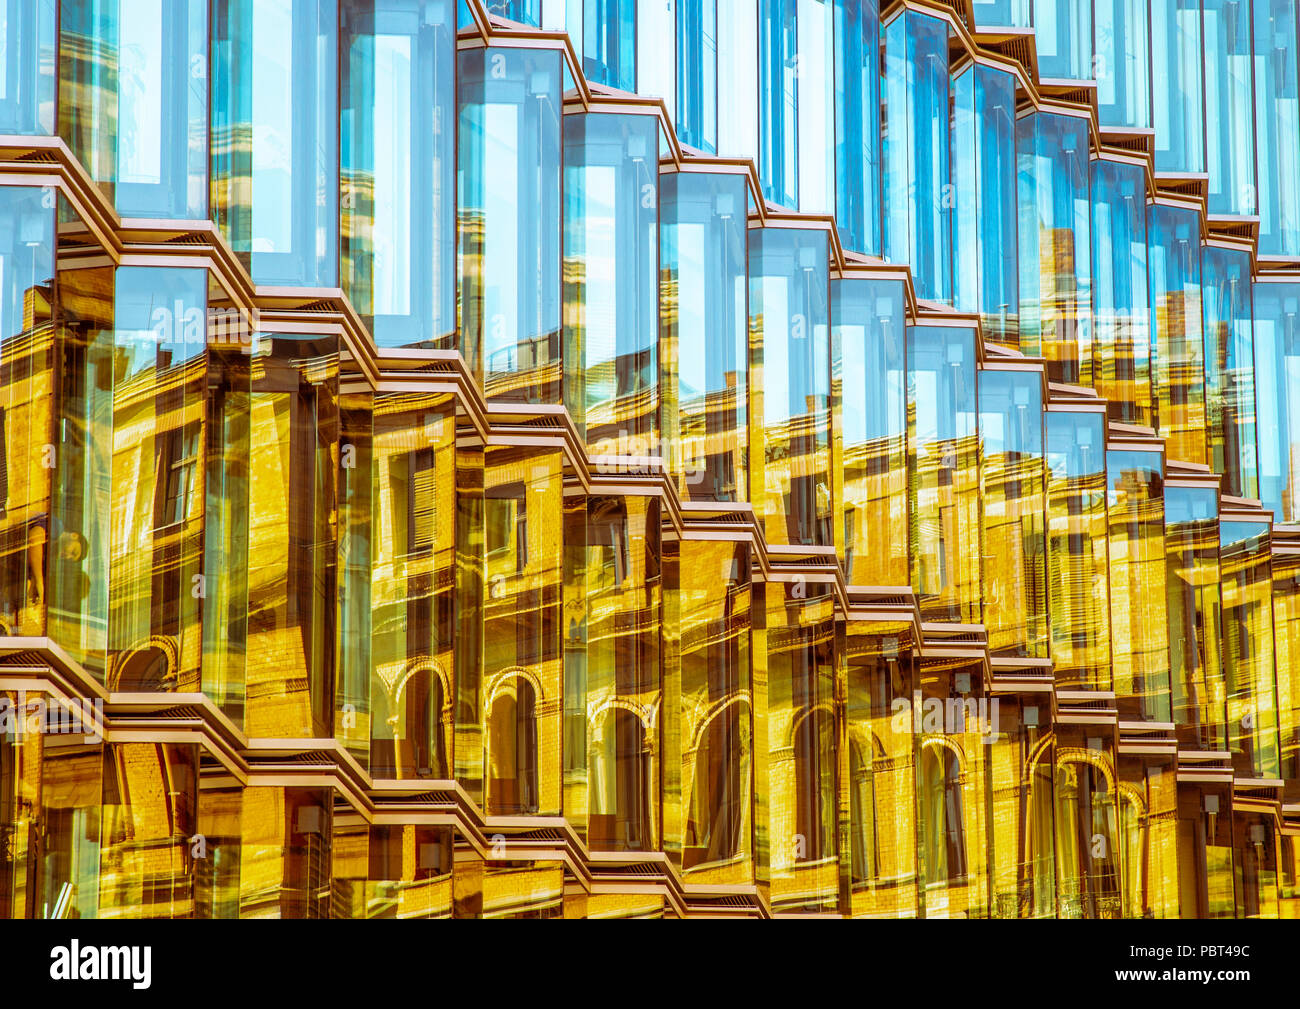 Berlin wider, Reflexionen von Gebäuden im Glas von anderen Gebäuden Stockfoto